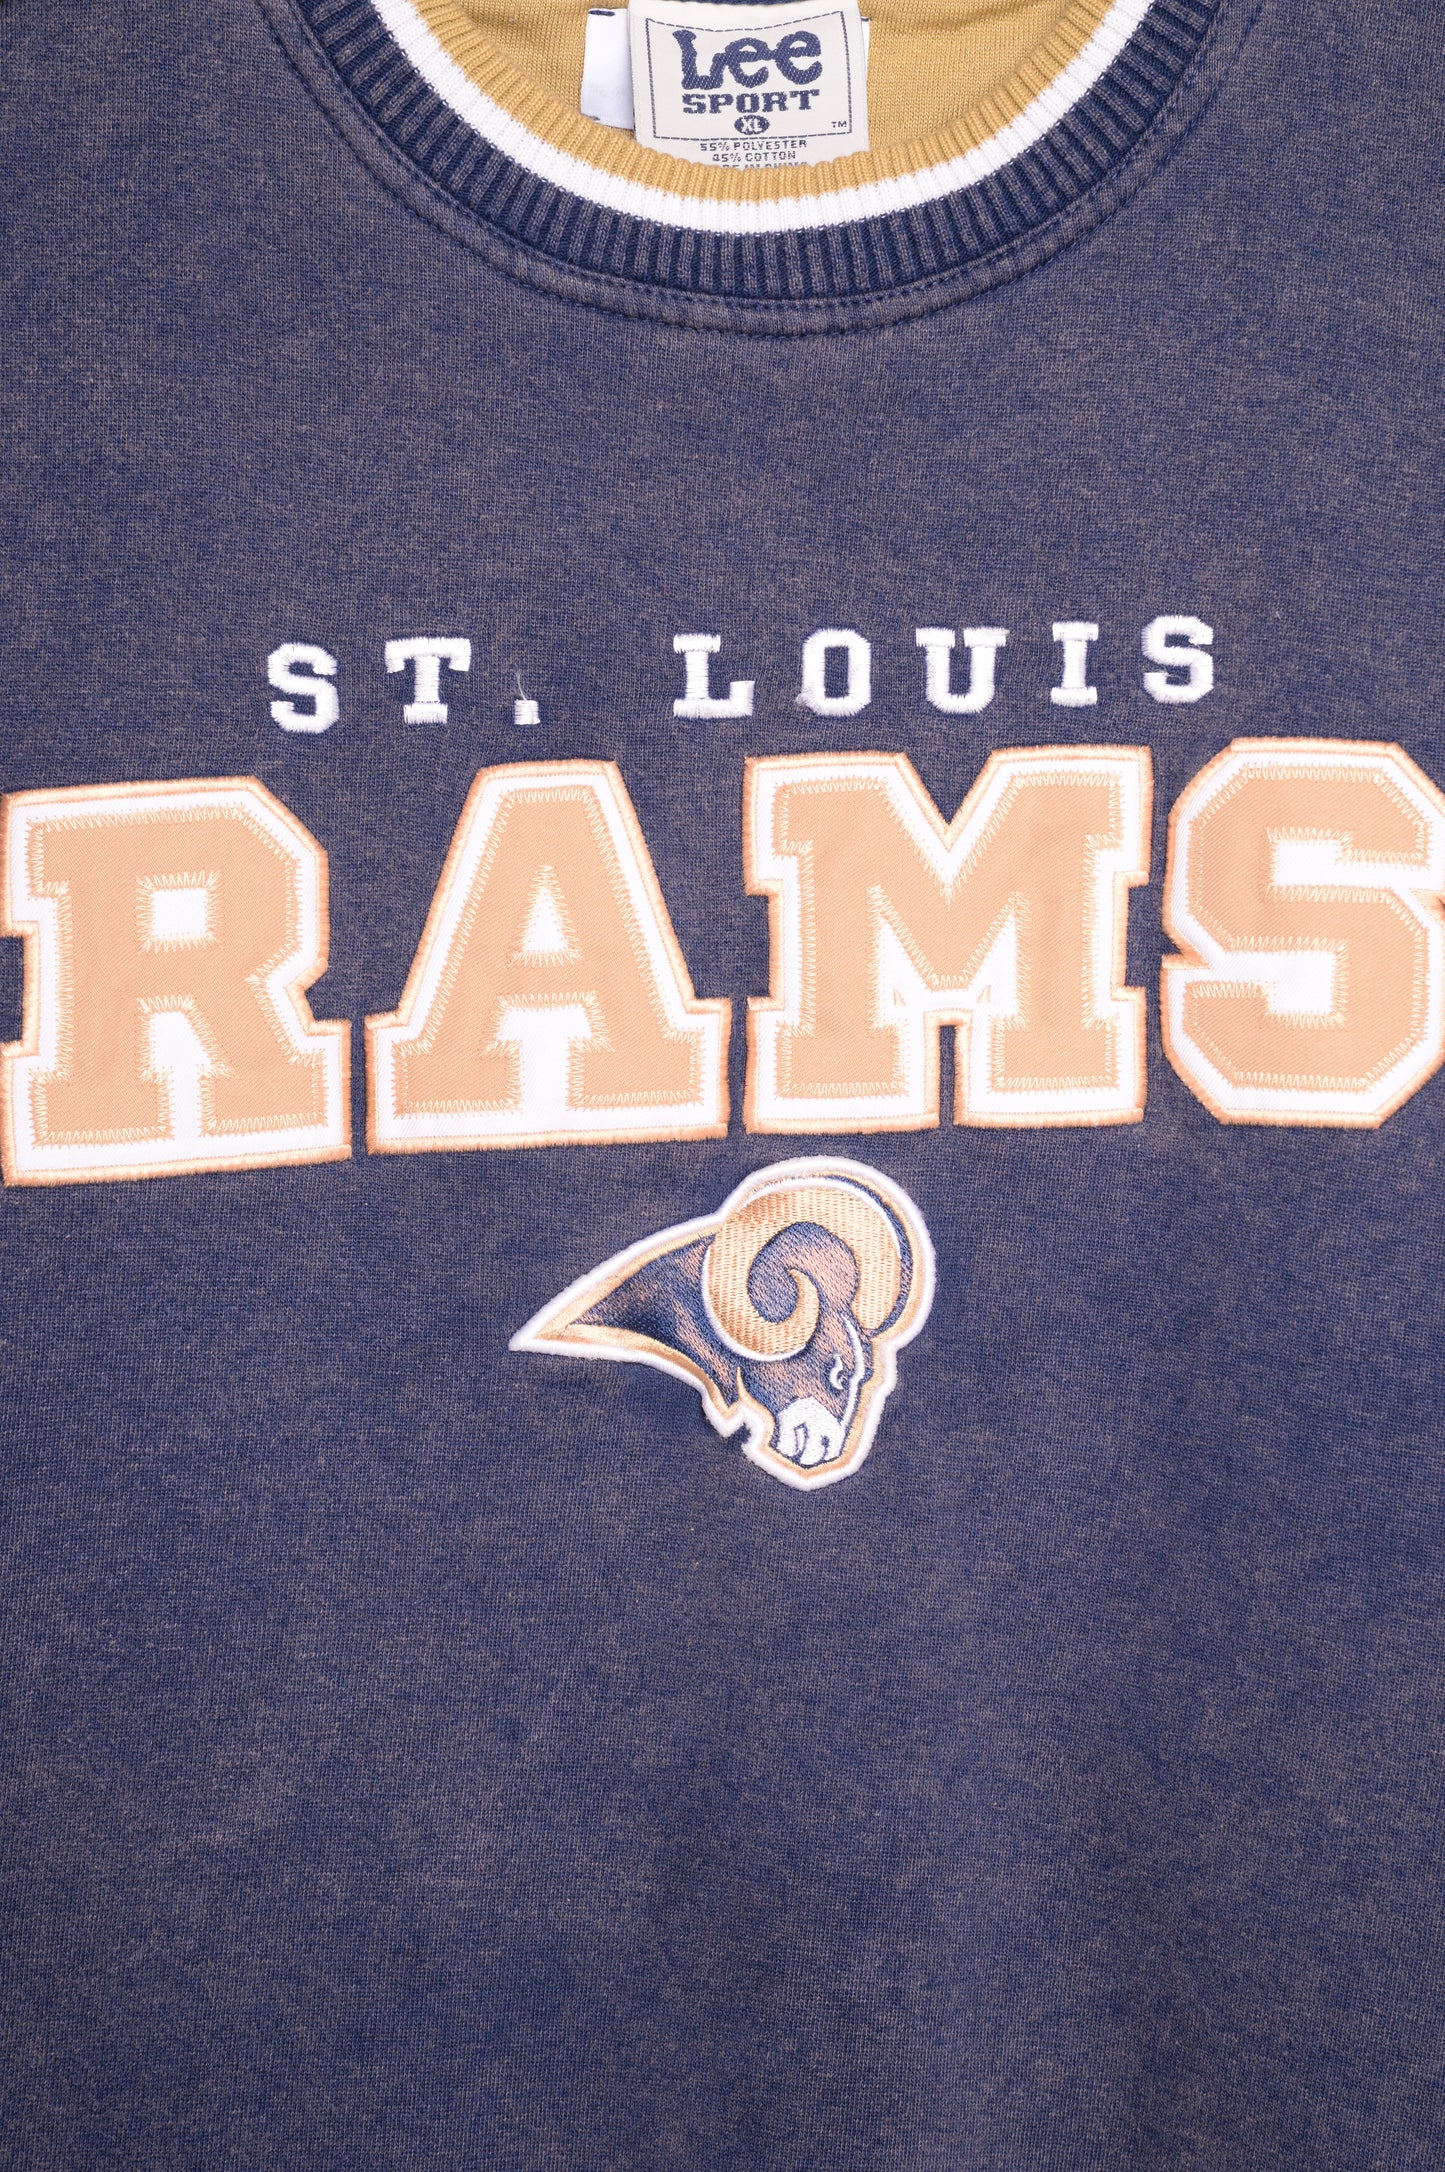 Vintage St.Louis Rams Hoodie